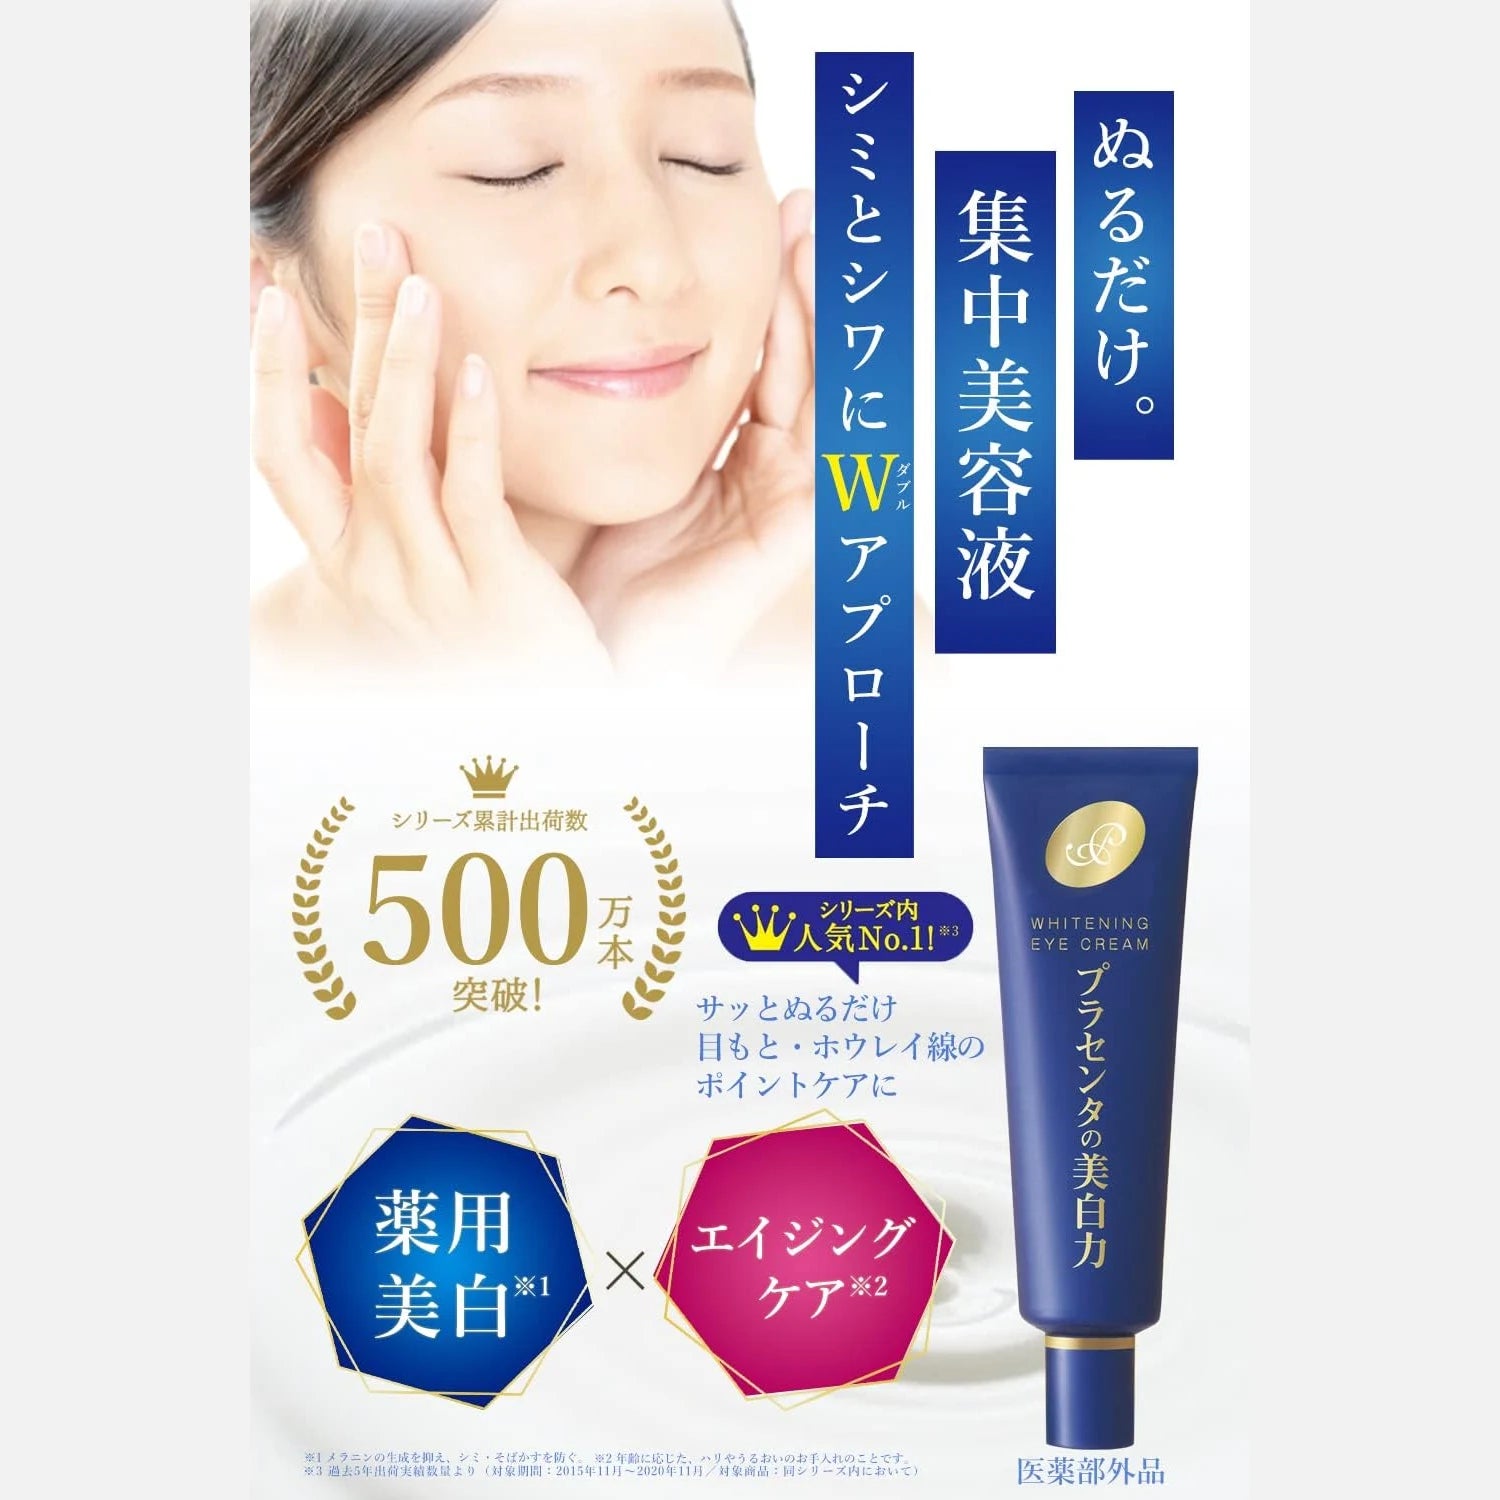 Meishoku Placenta Whitening Eye Cream 33g - Buy Me Japan